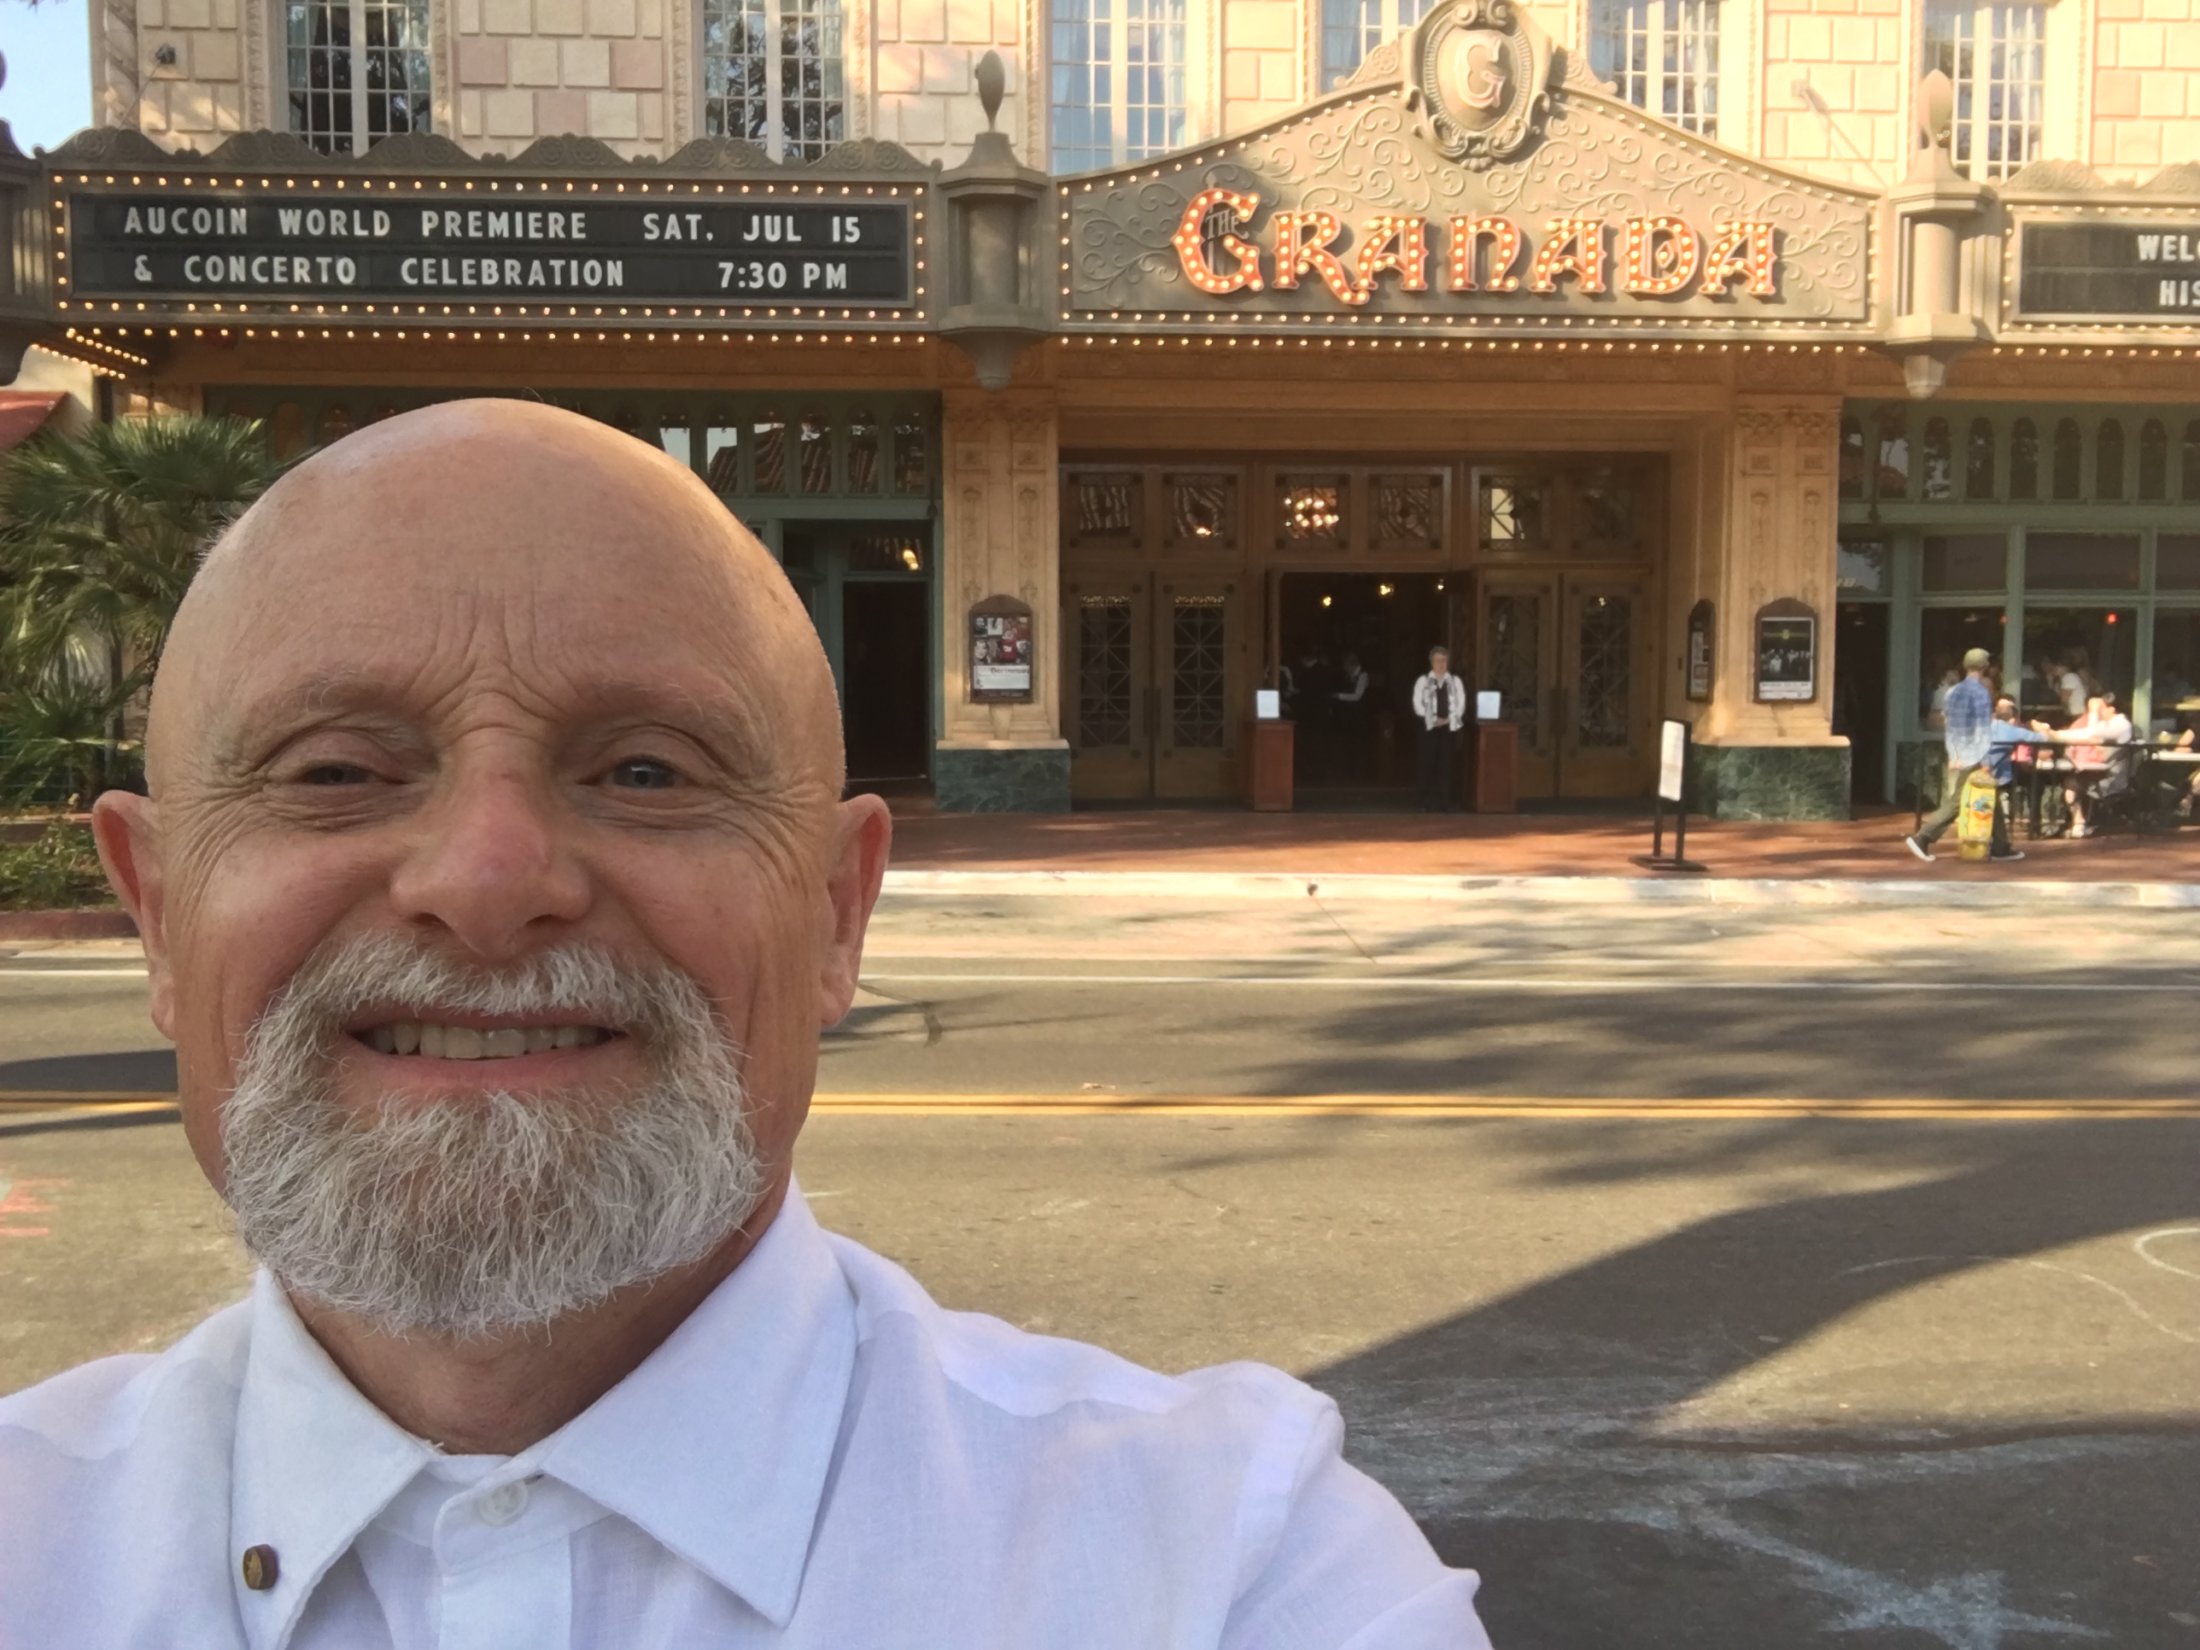 Outside The Granada Theatre In Santa Barbara